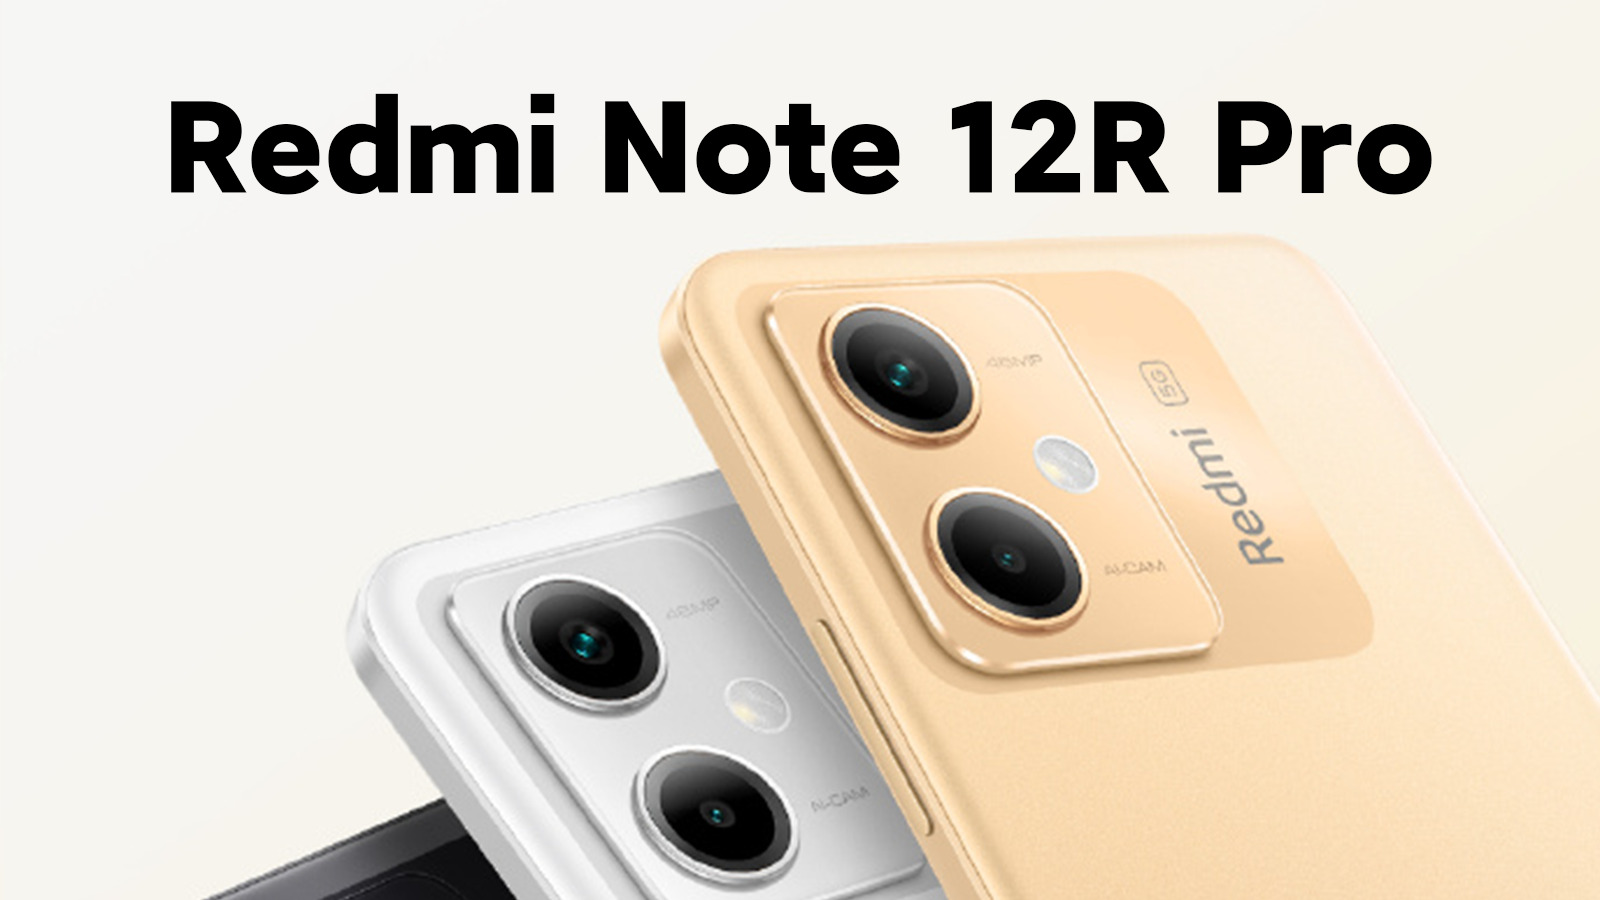 Snapdragon 4 Gen 1, écran 120Hz, 5000mAh et jusqu'à 256Go de stockage - les spécifications officielles du Redmi Note 12R Pro révélées.